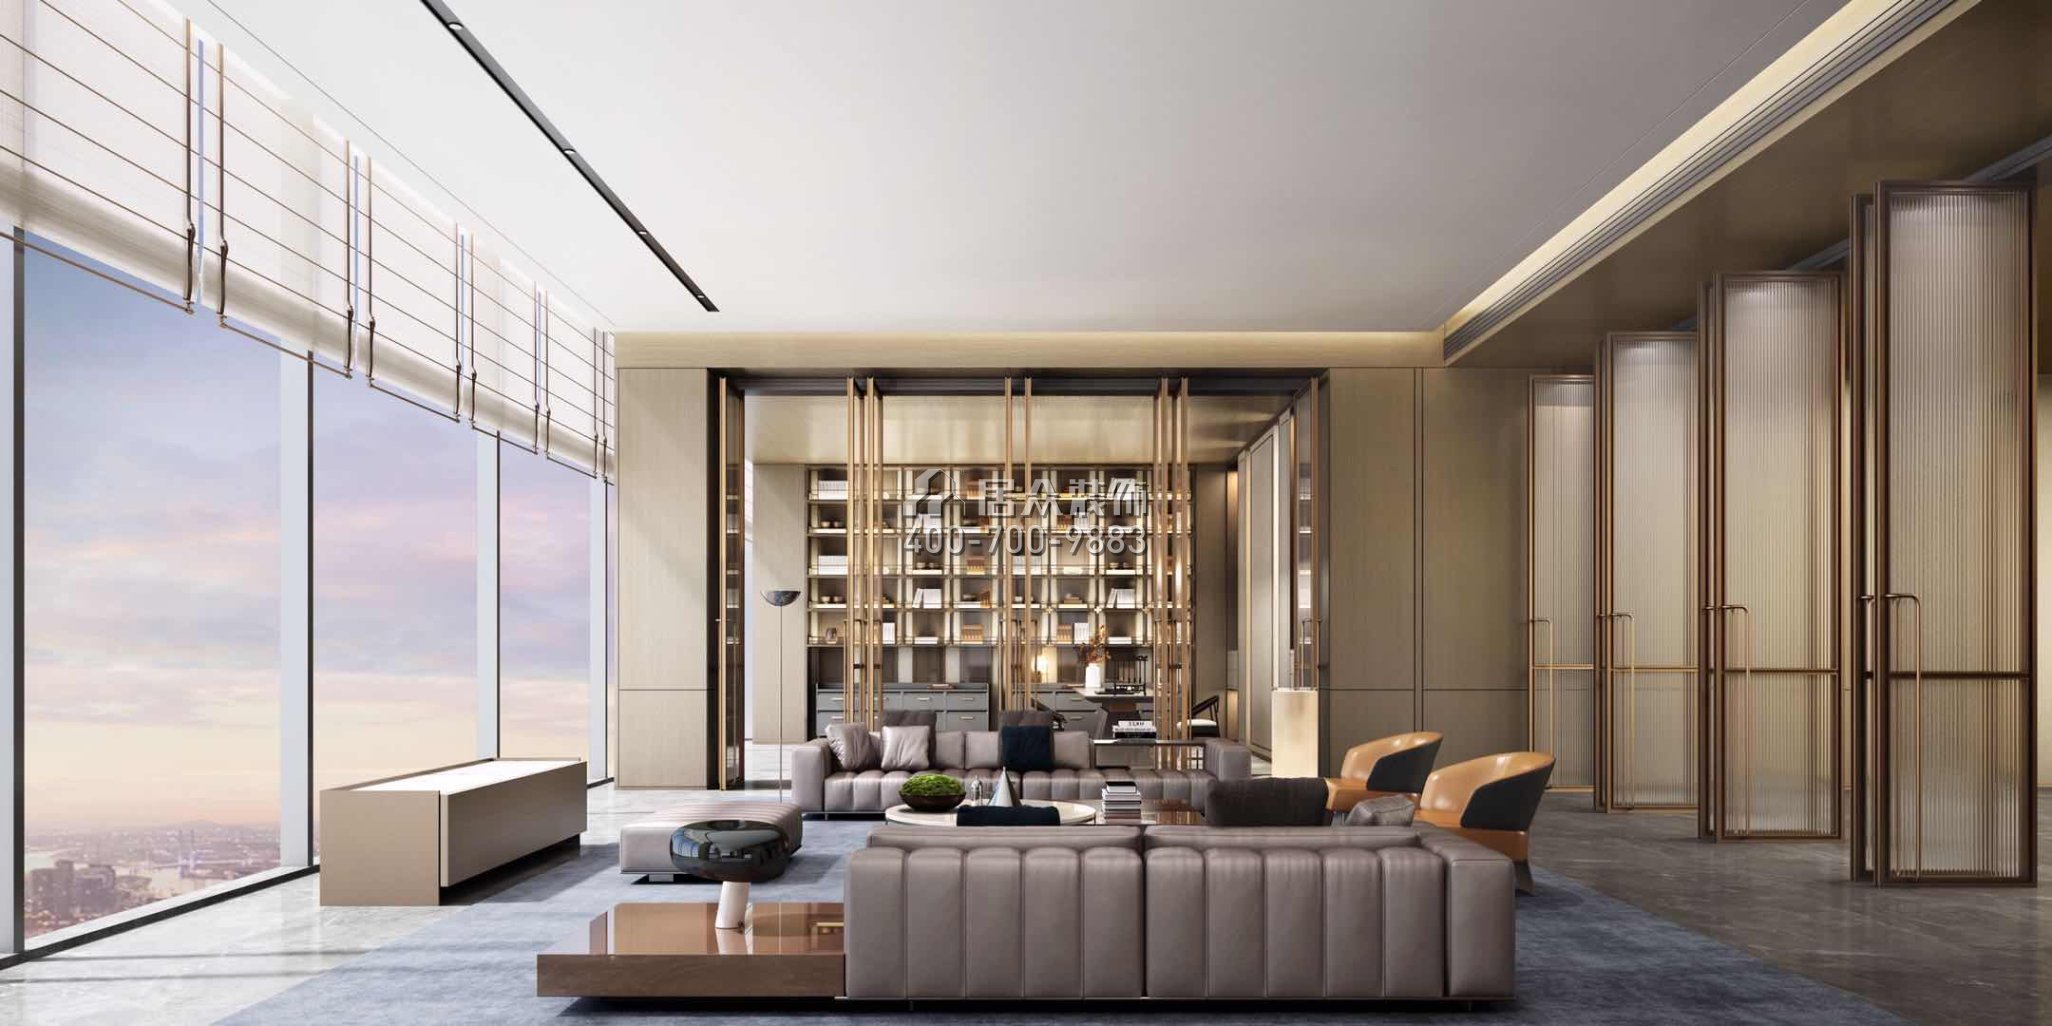 豐泰觀山碧水380平方米現代簡約風格別墅戶型客廳裝修效果圖